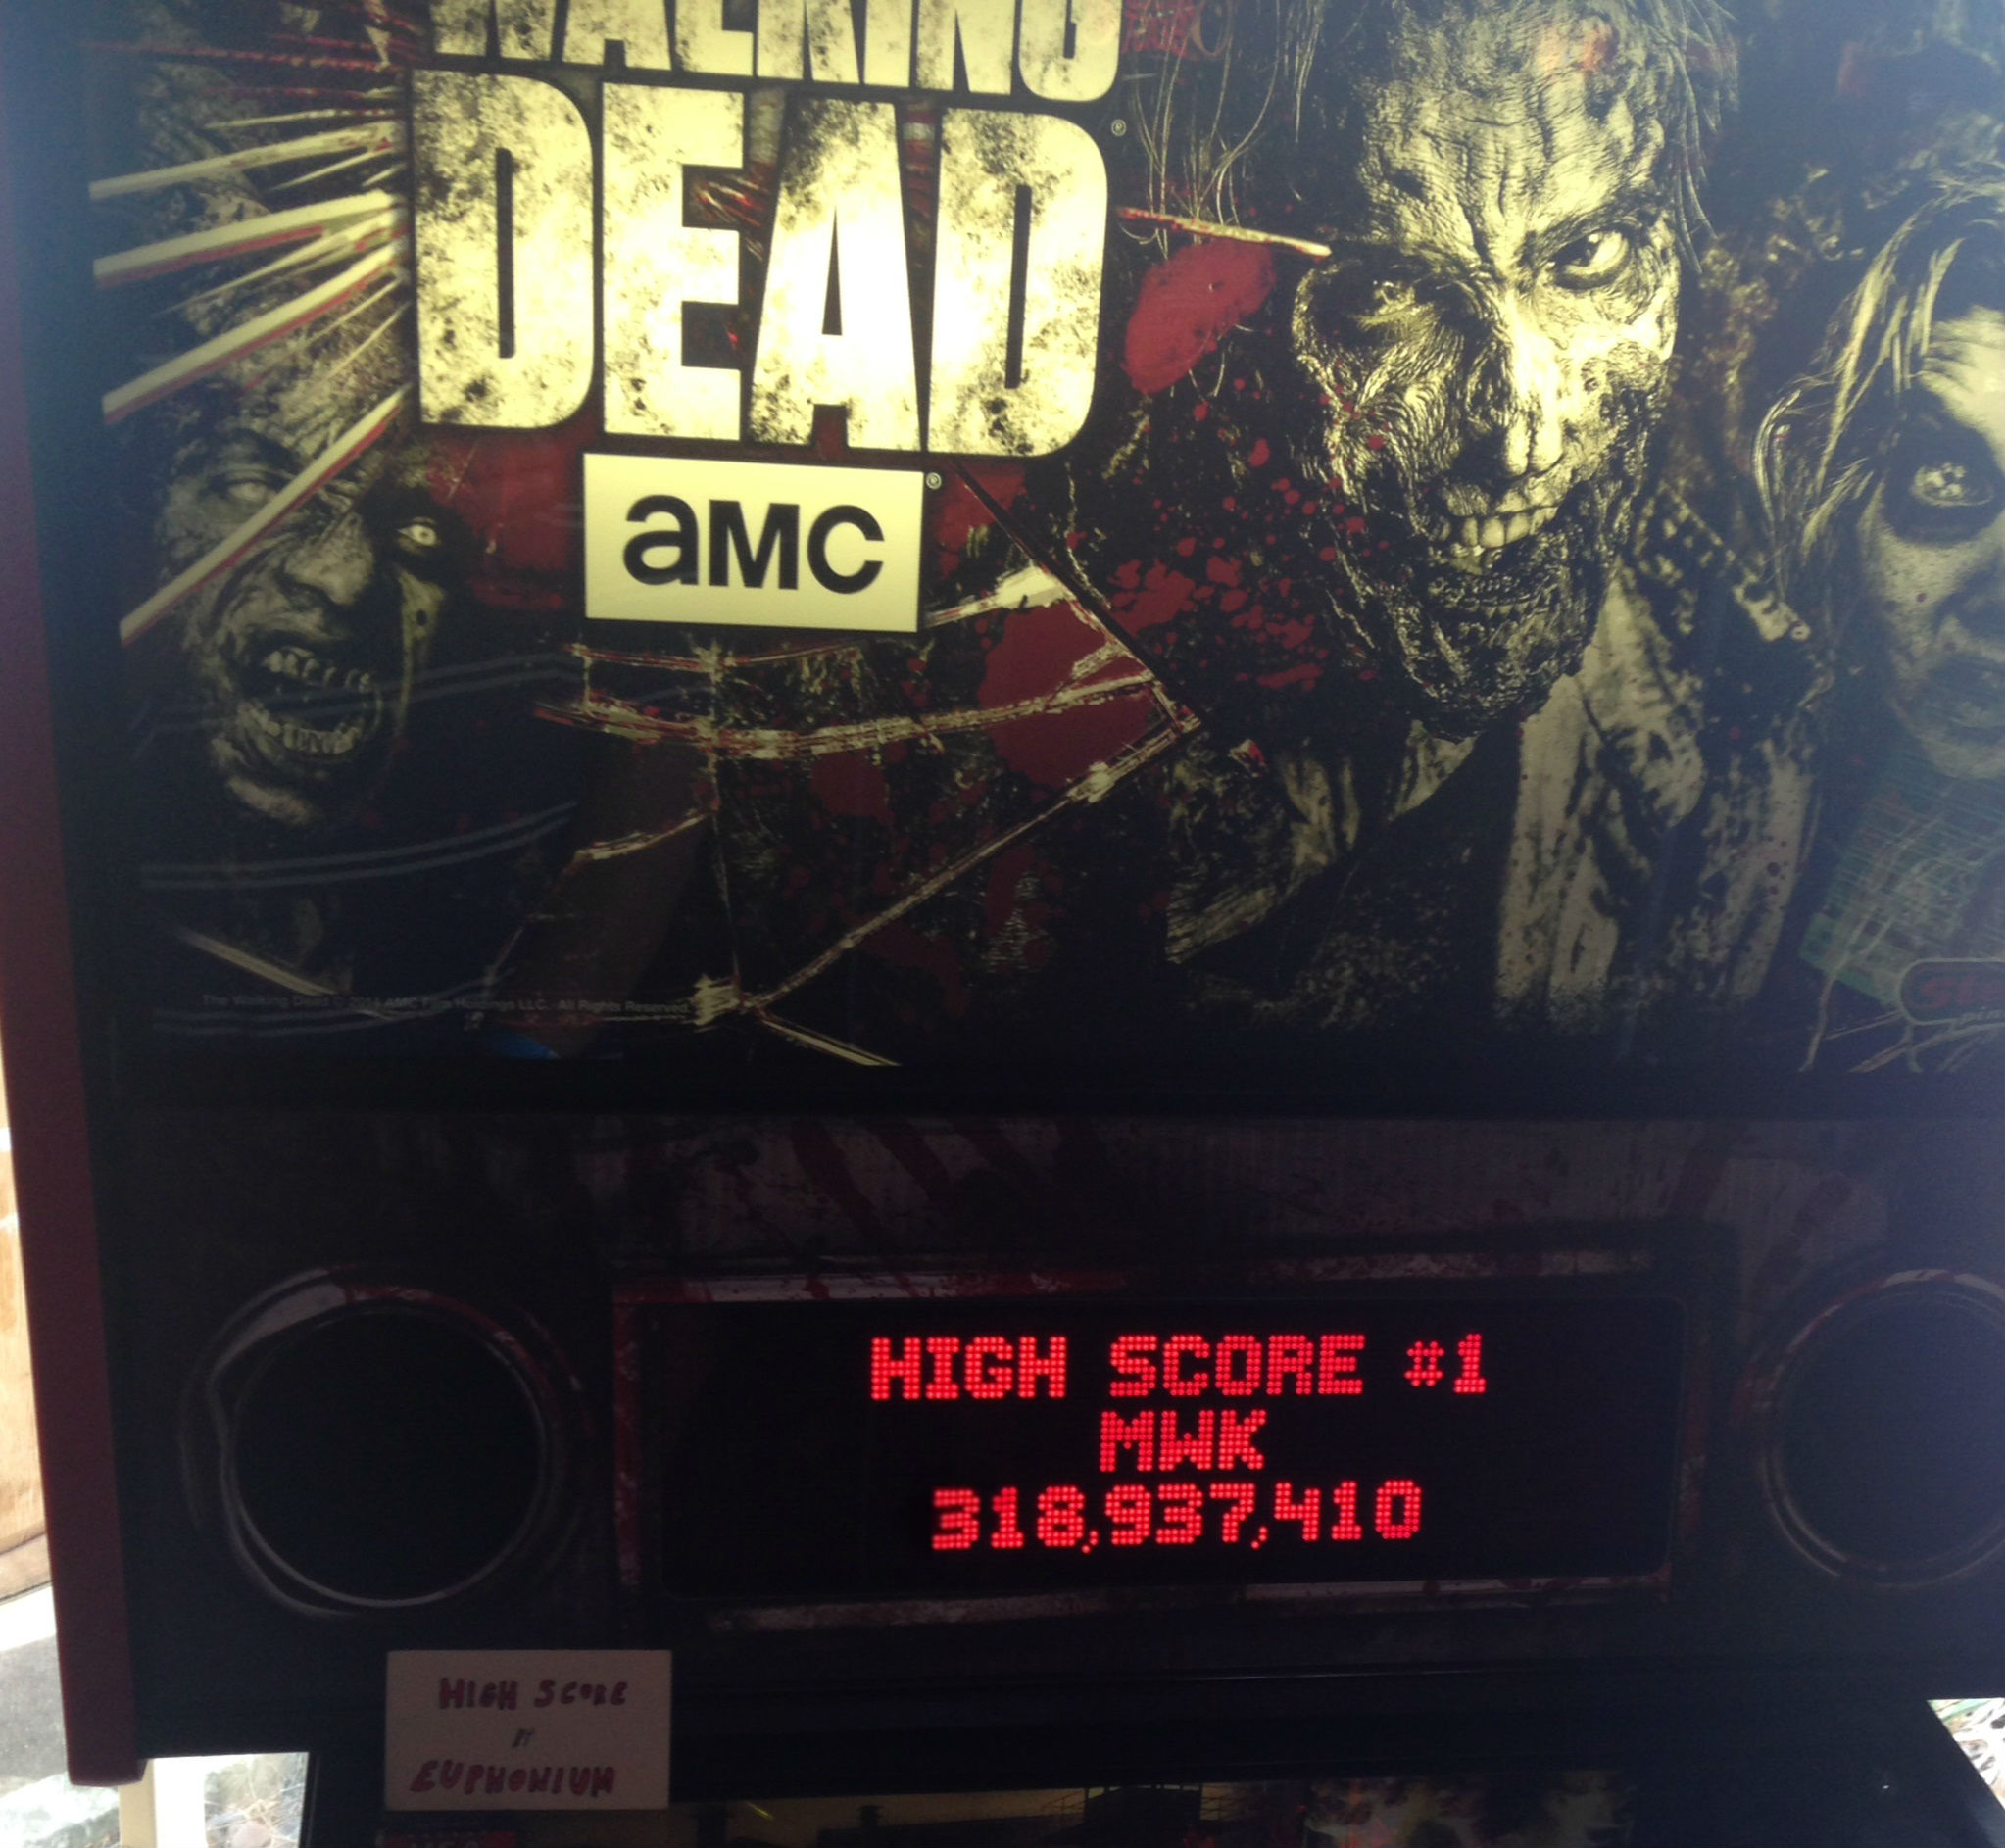 The Walking Dead 318,937,410 points